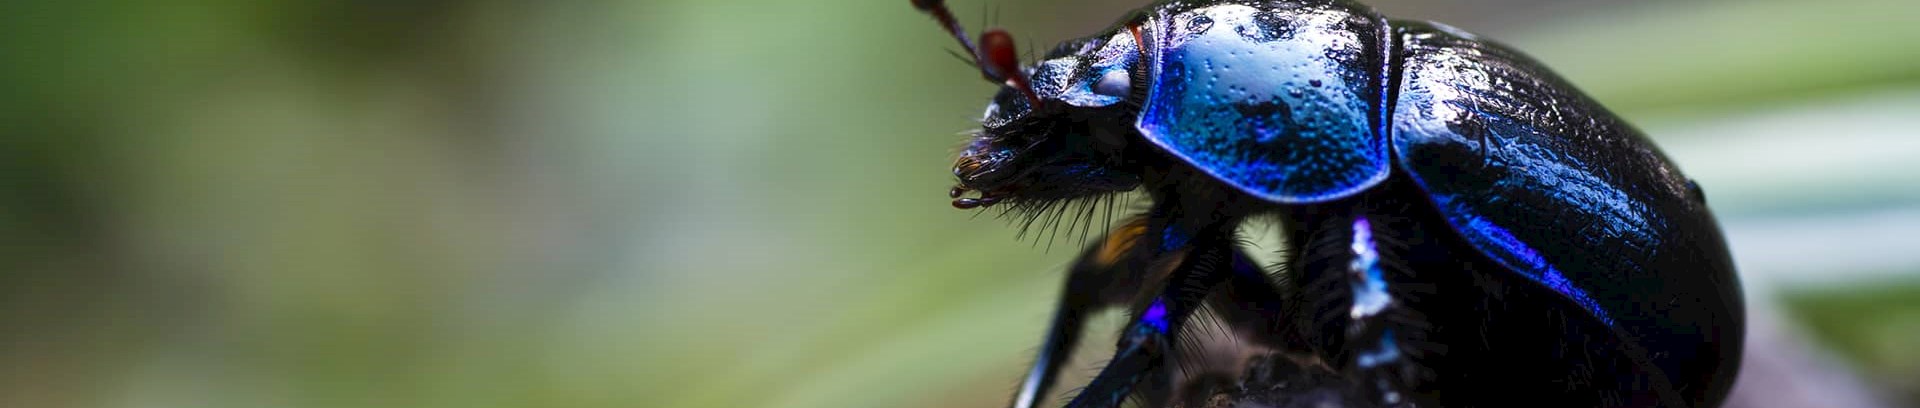 Møgbille, find og forstå naturens insekter med FOF Aarhus